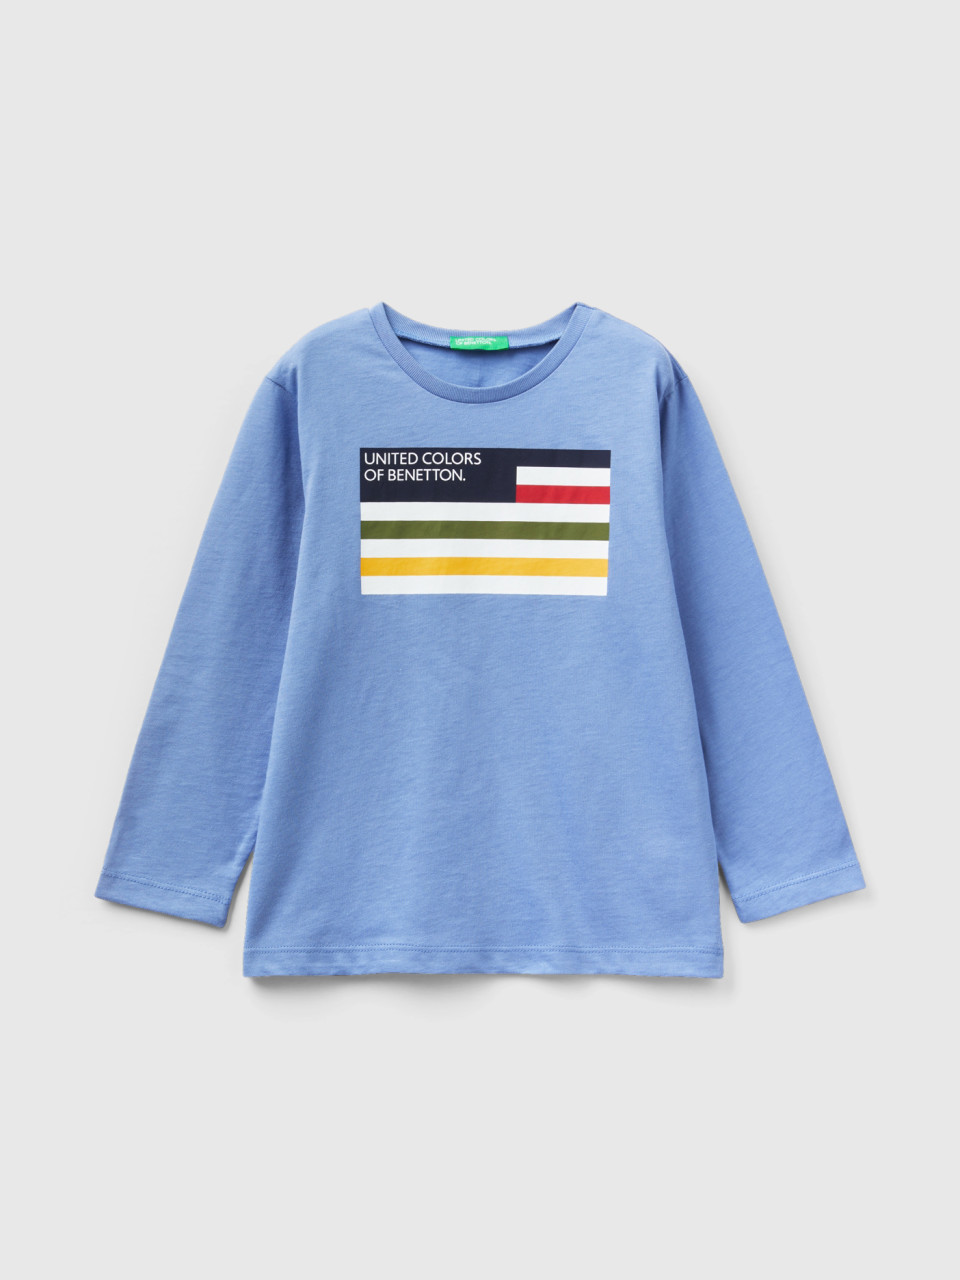 Benetton, Long Sleeve Organic Cotton T-shirt, Light Blue, Kids